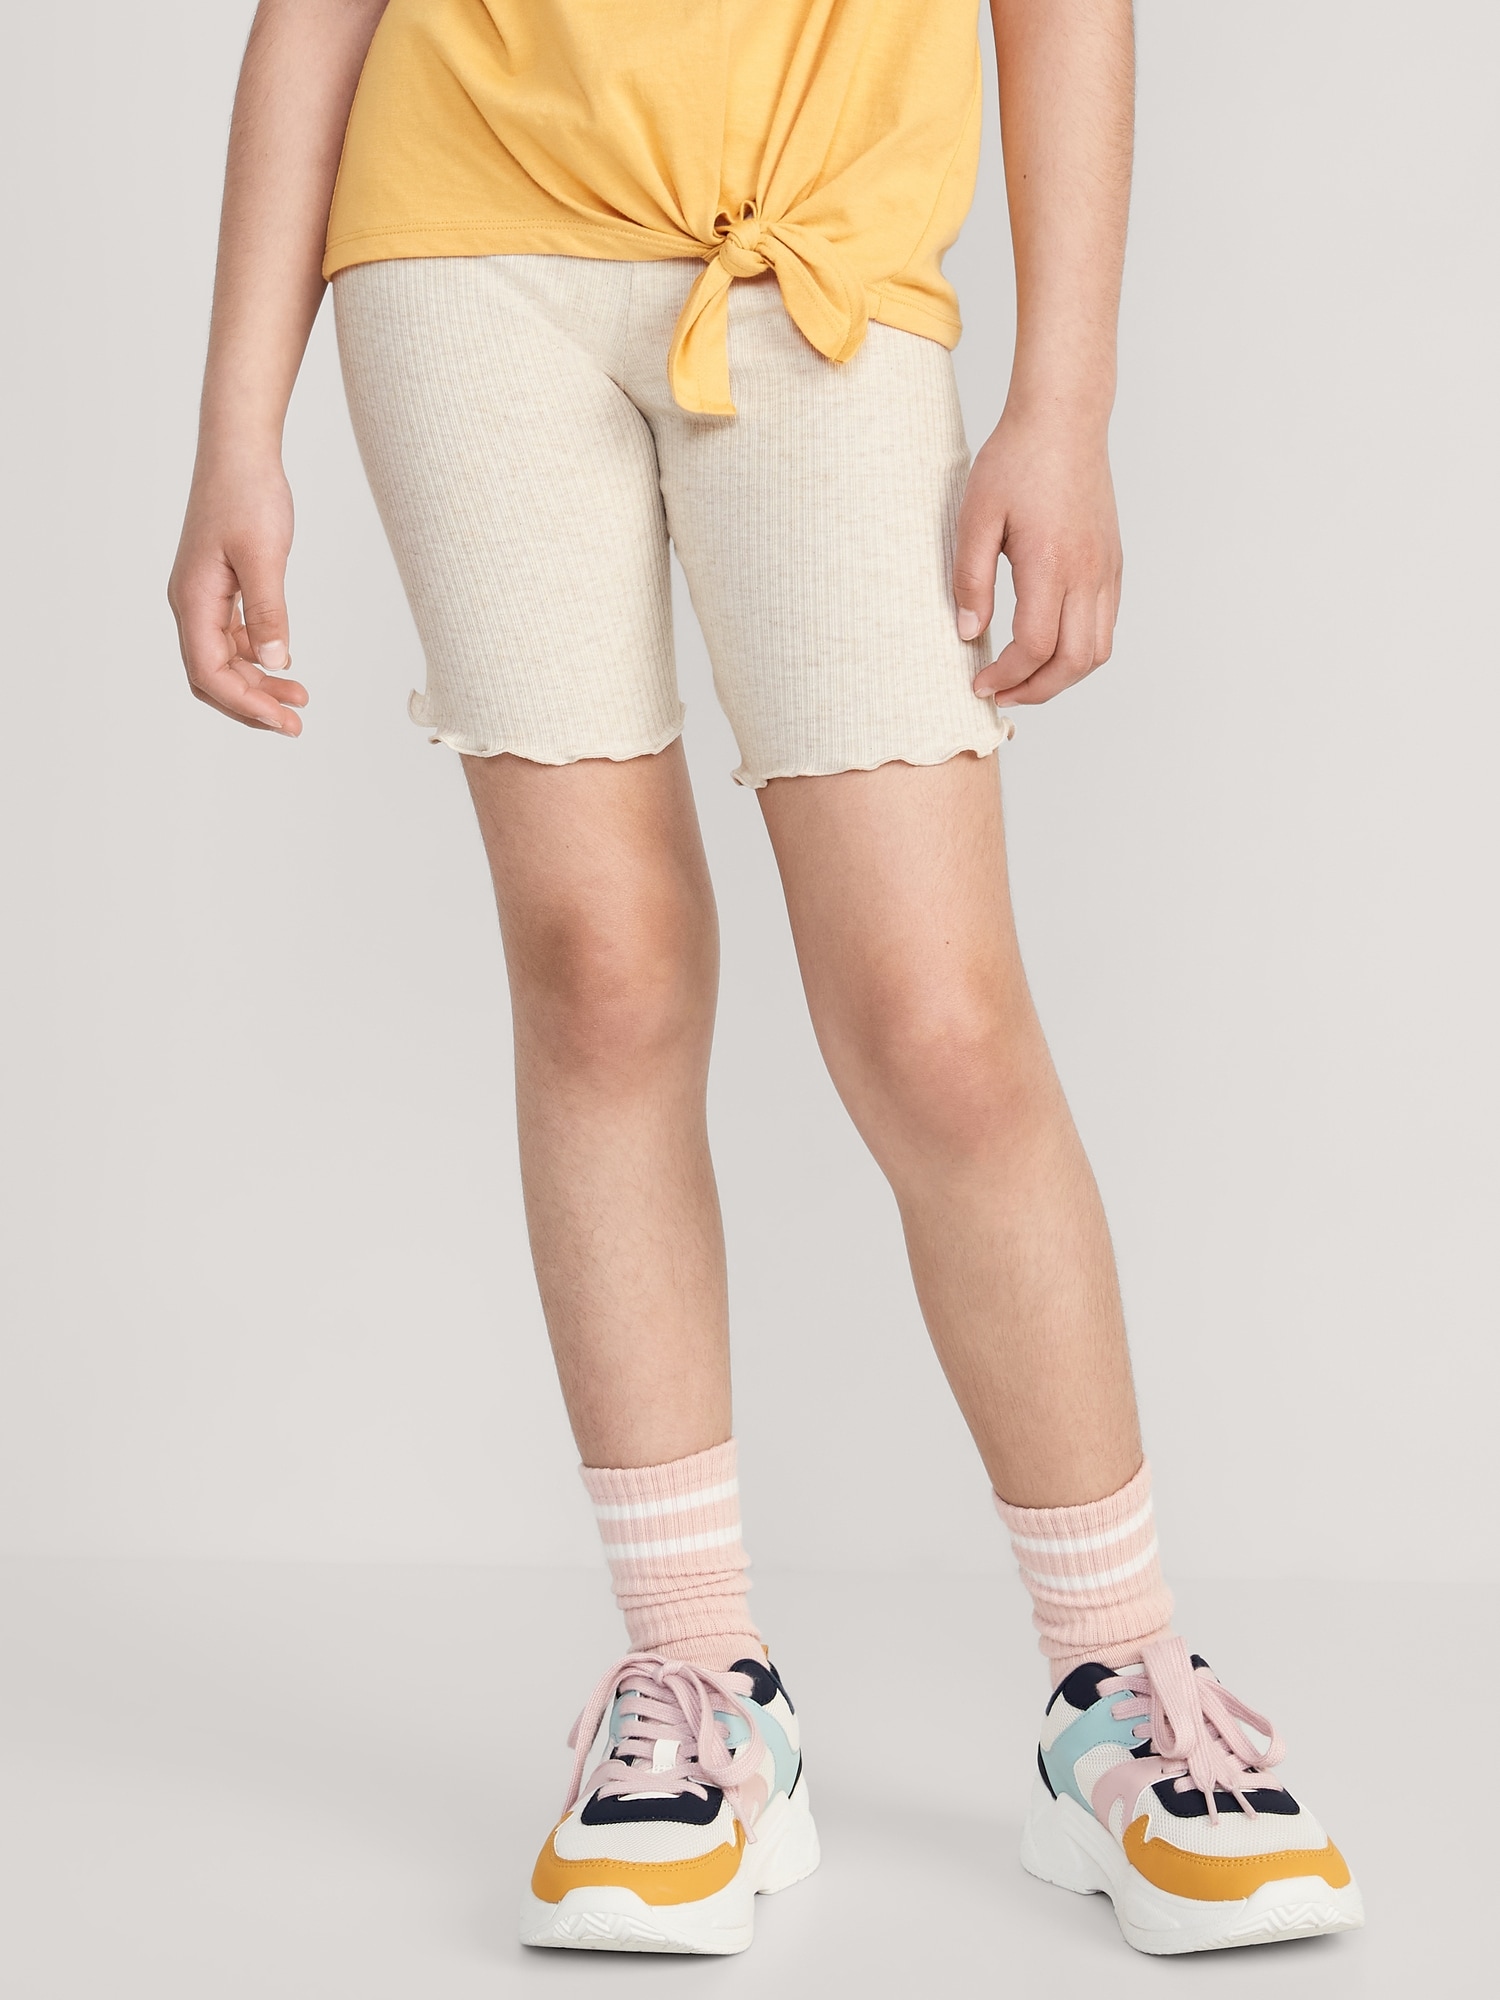 Old Navy Rib-Knit Lettuce-Edged Long Biker Shorts for Girls beige. 1